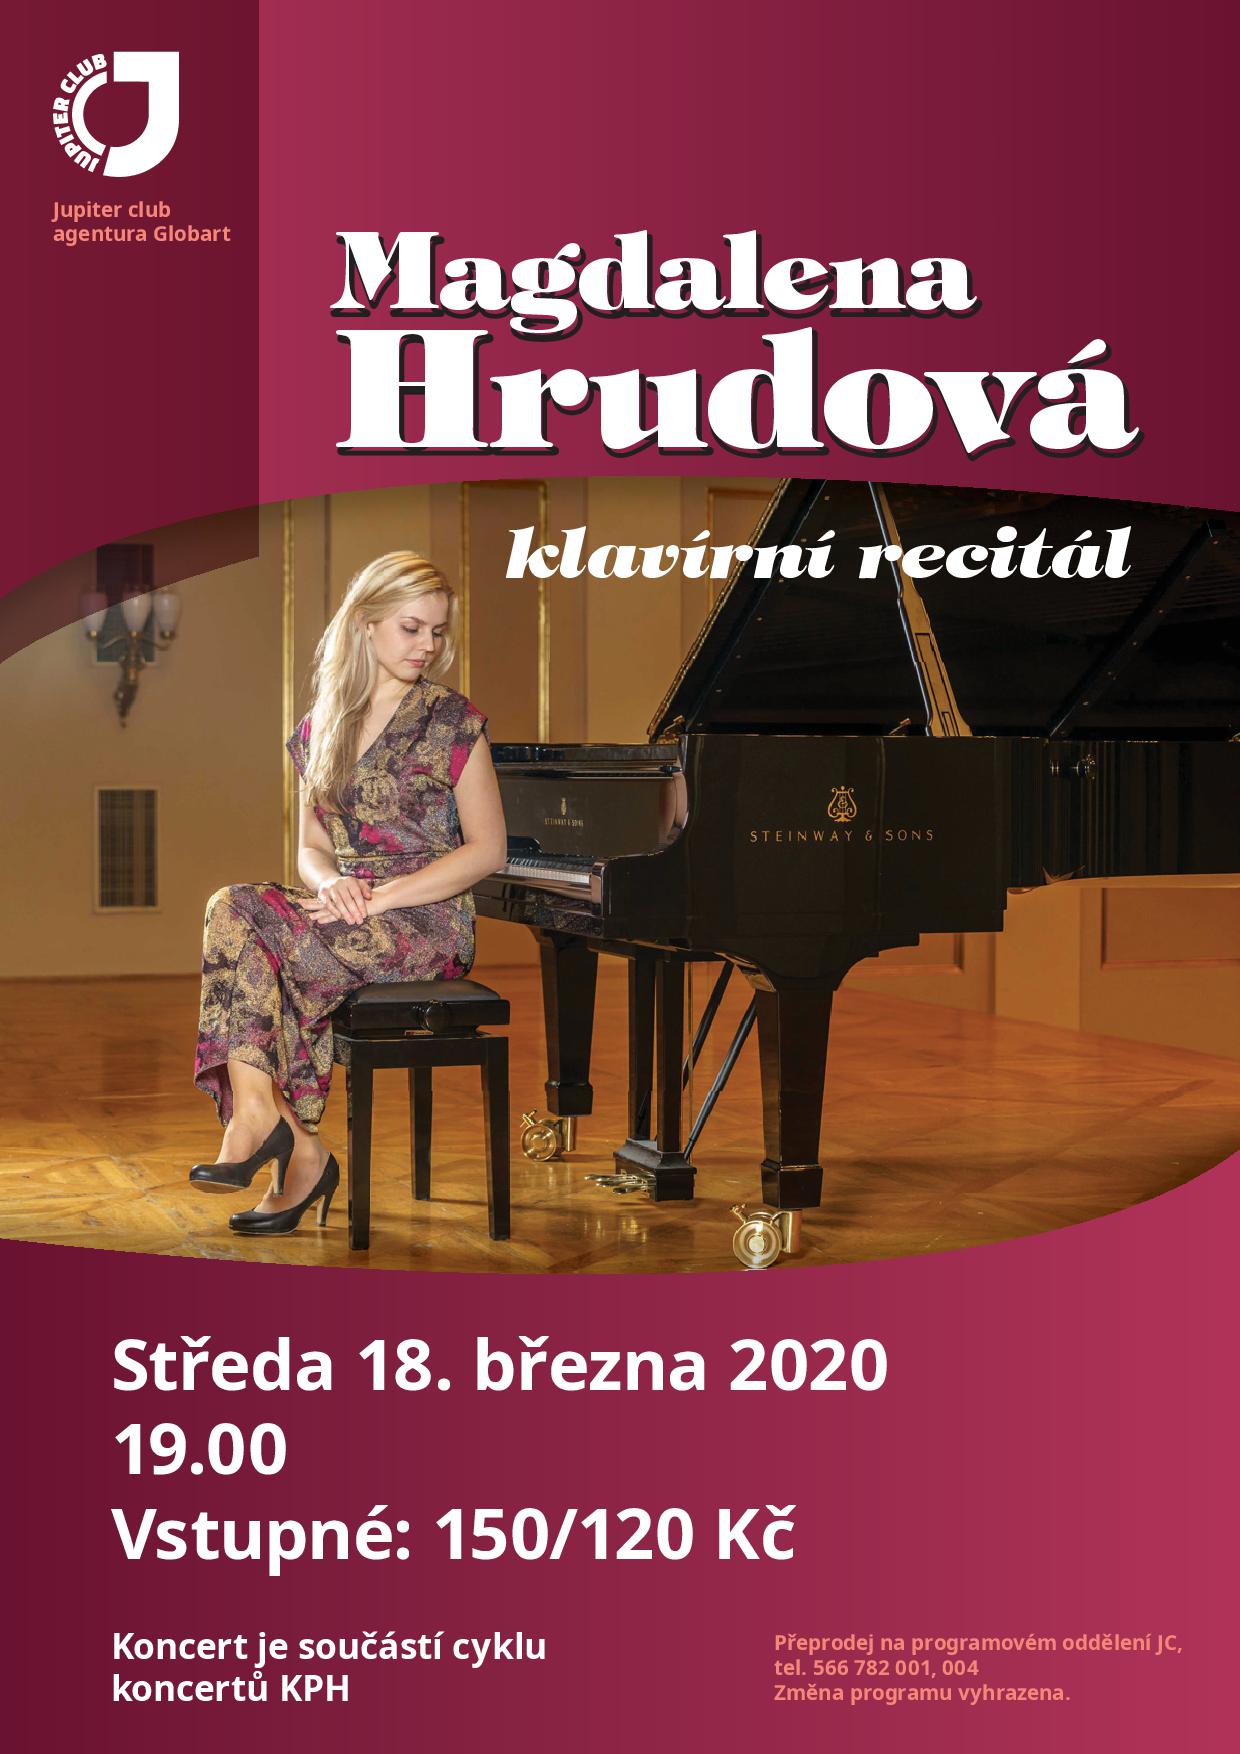 Klavírní recitál Magdaleny Hrudové již ve středu 18. března ve Velkém Meziříčí